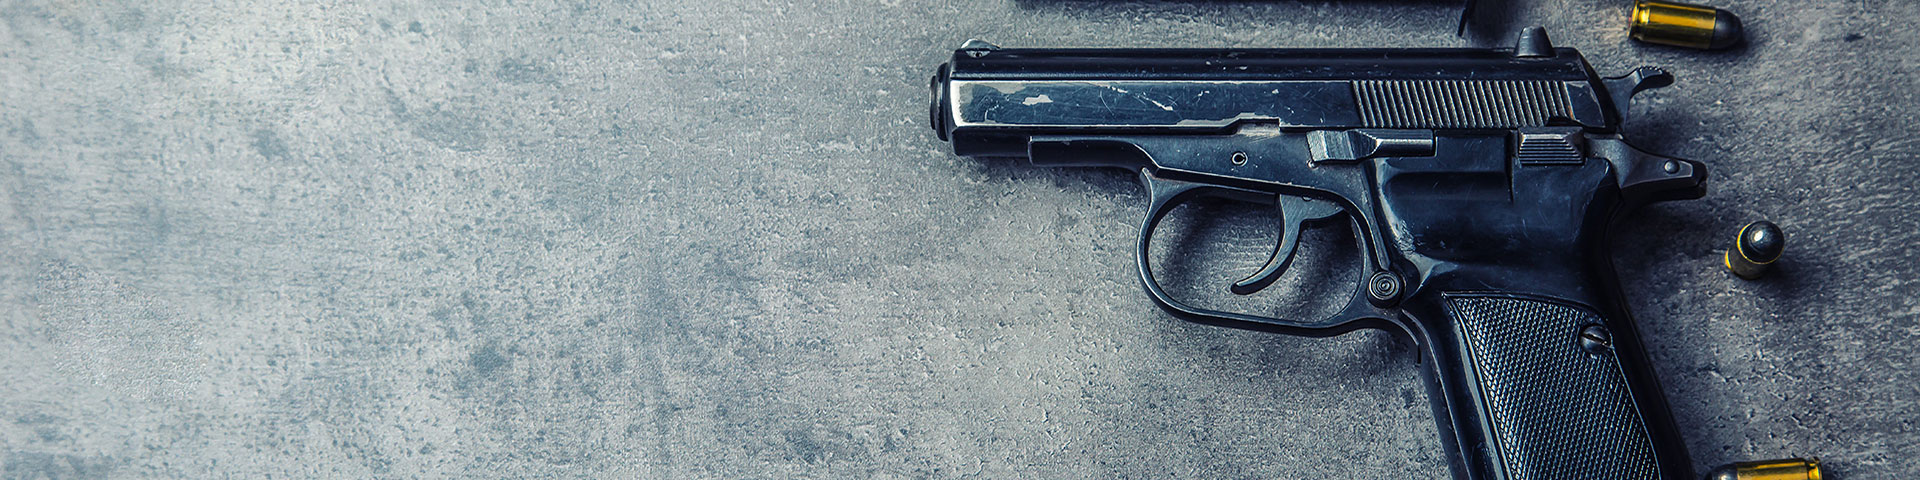 Violent crime gun on grey background